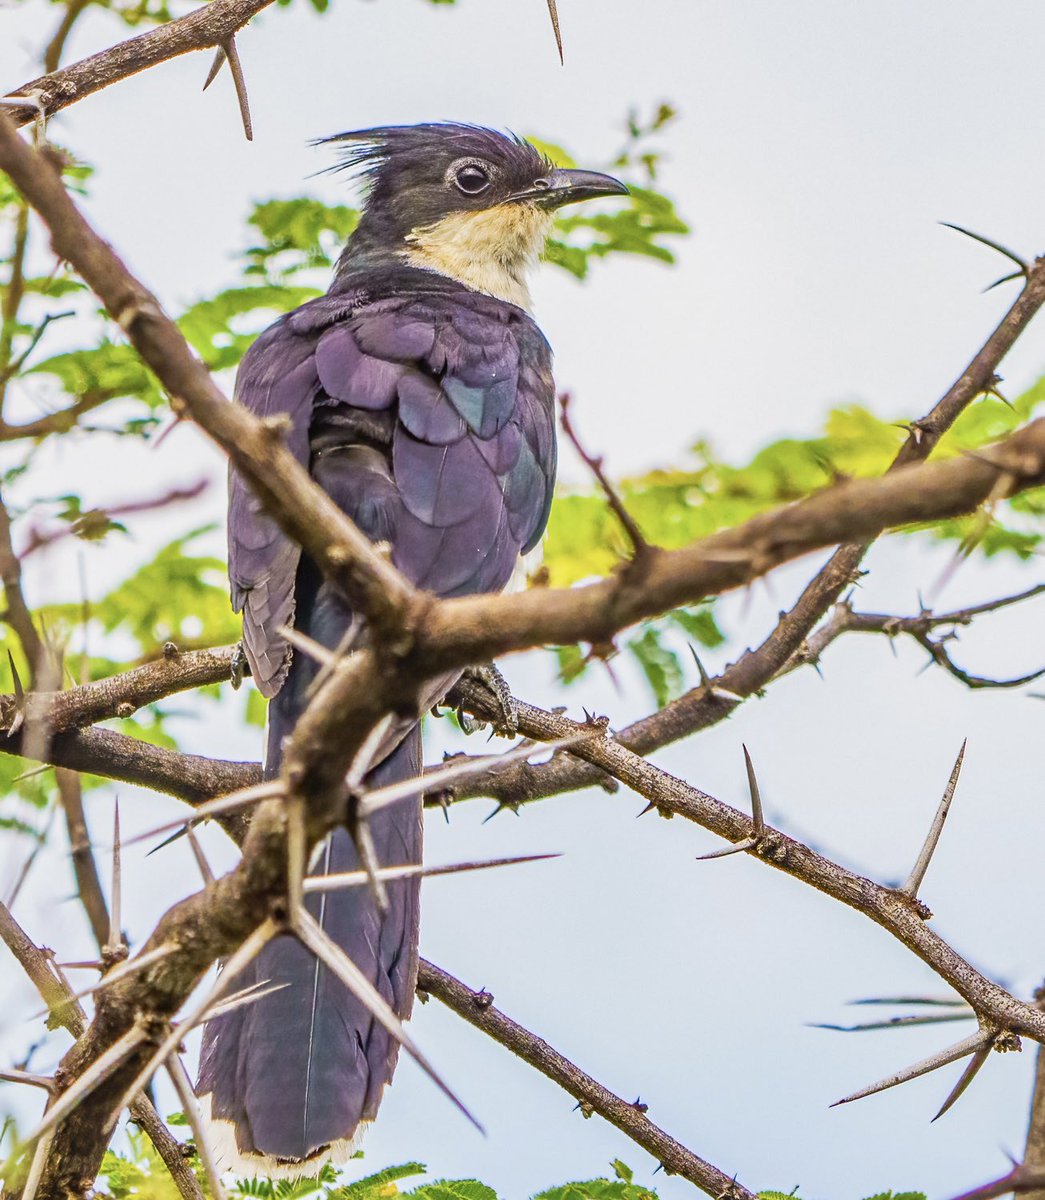 Jacobin Cuckoo in Victoria Falls National Park recently @Natures_Voice @NatGeoTravel #BBCWildlifePOTD #TwitterNatureCommunity #birding #NaturePhotography #wildlifephotography #Zimbabwe